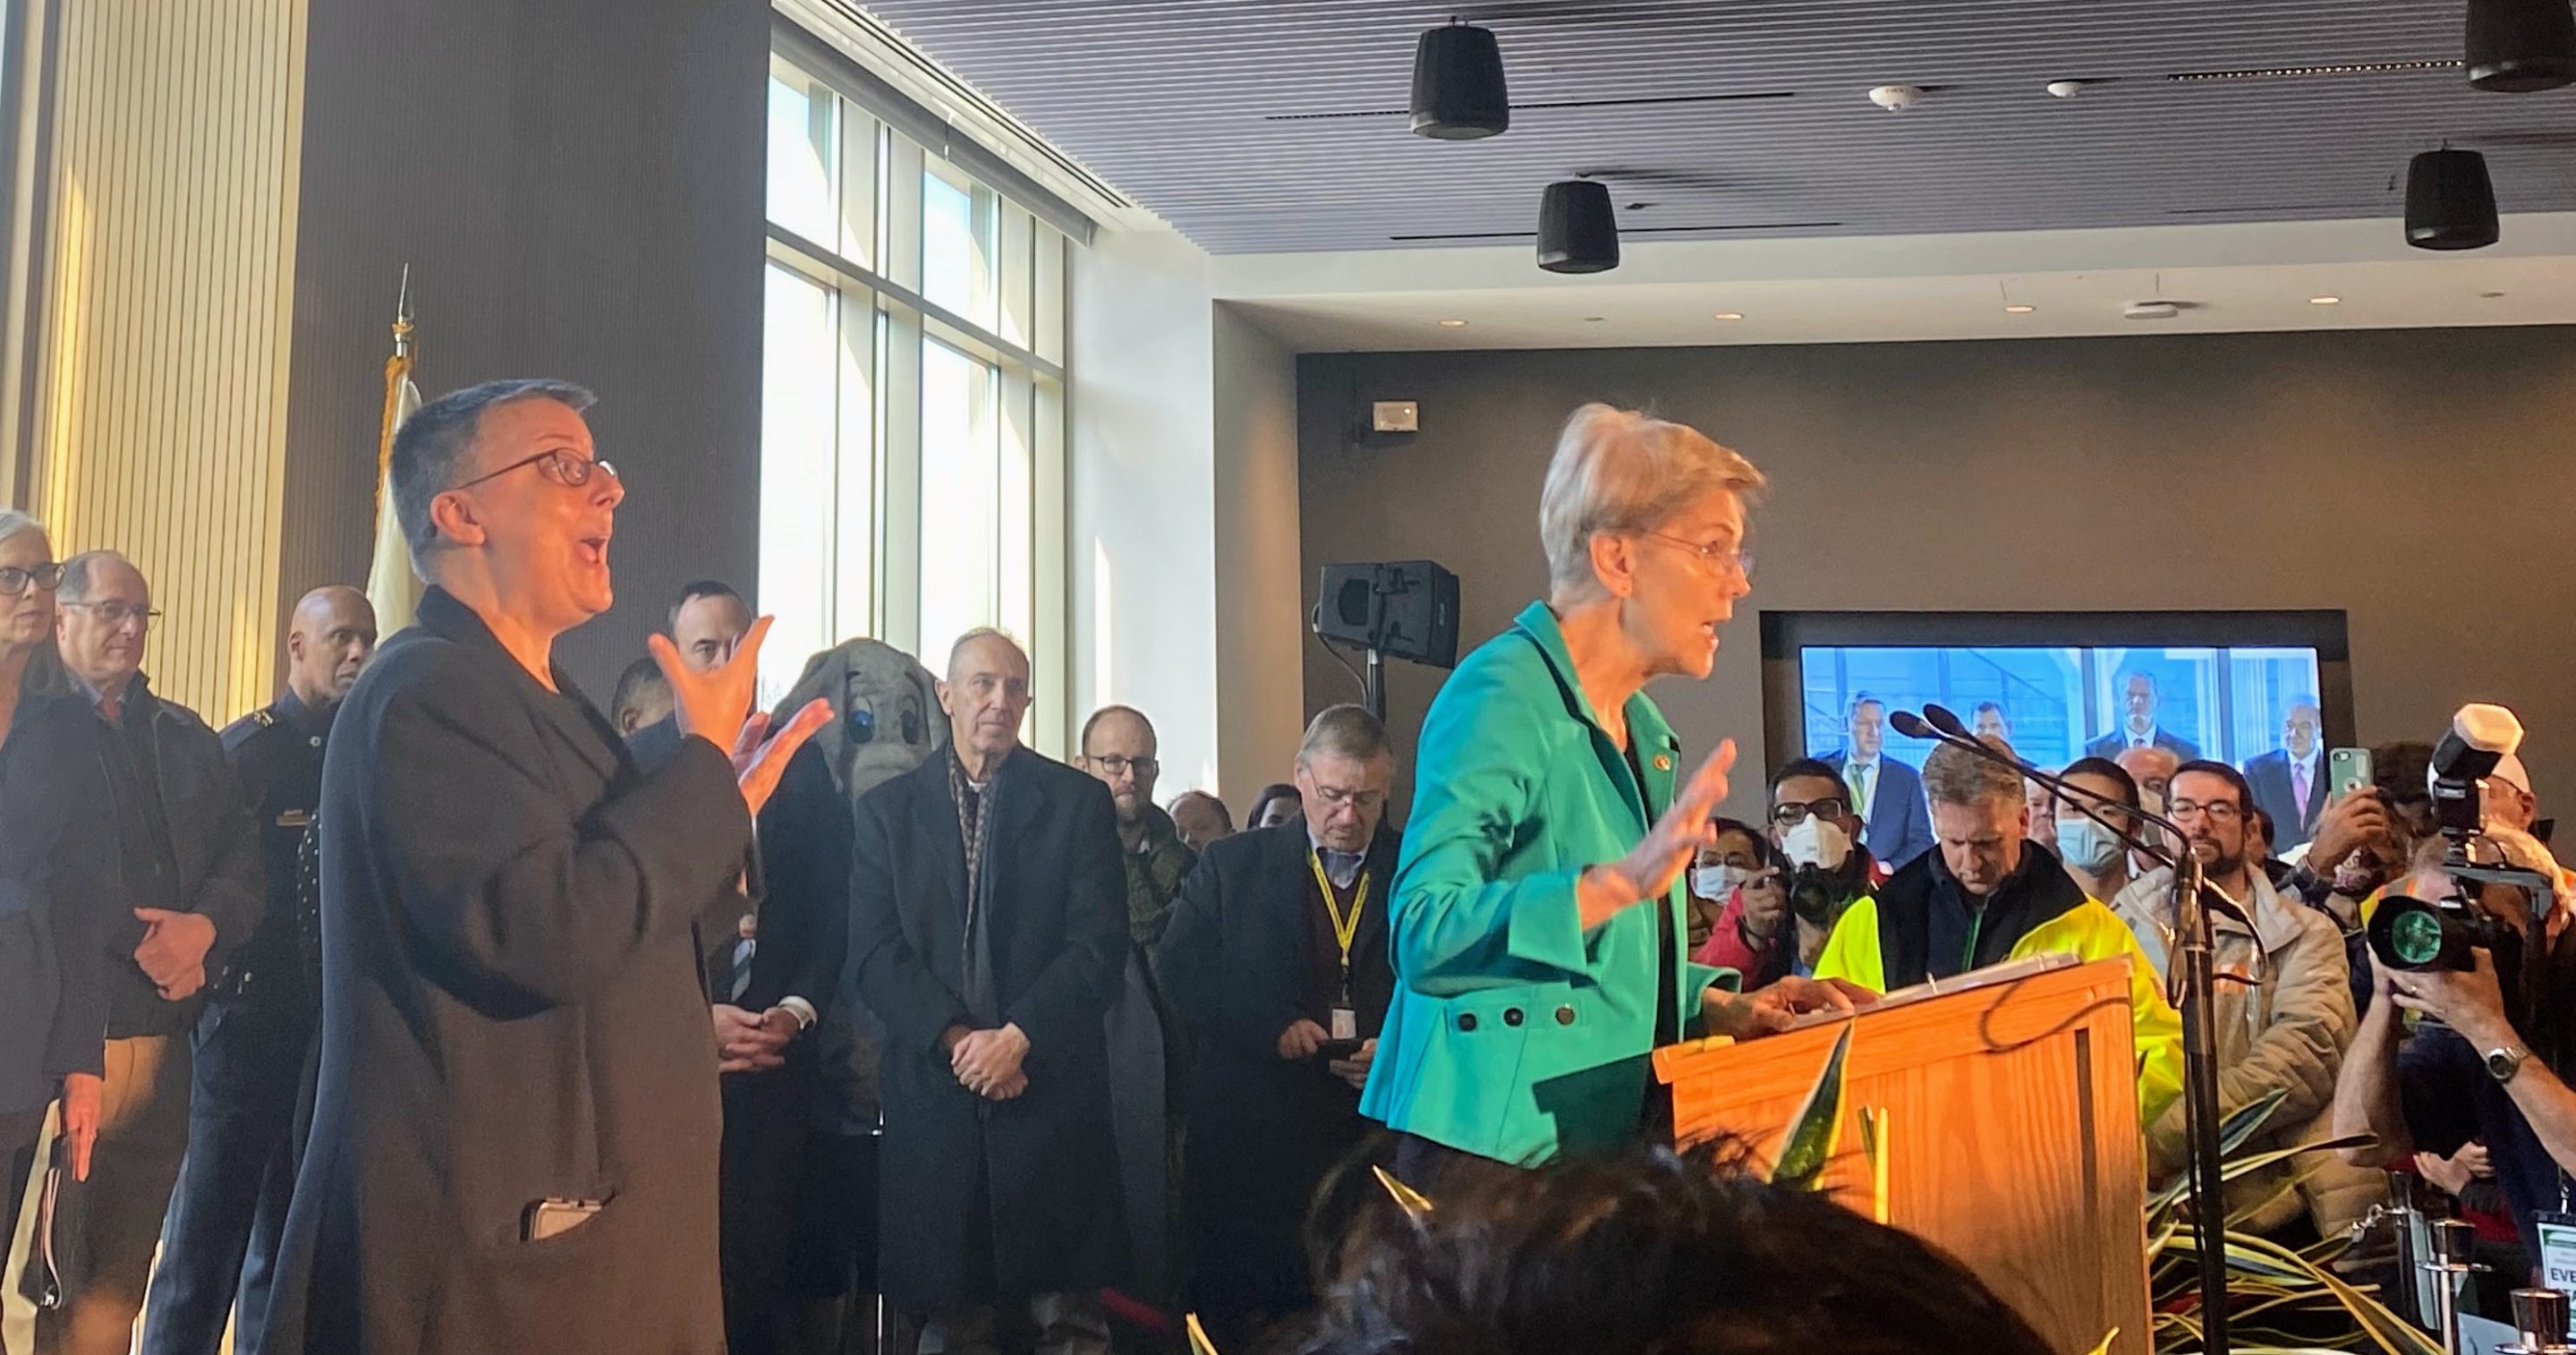 Senator Elizabeth Warren speaks to a large crowd at Tufts University. Governor Charlie Baker, Senator Ed Markey, among others, stand behind her.